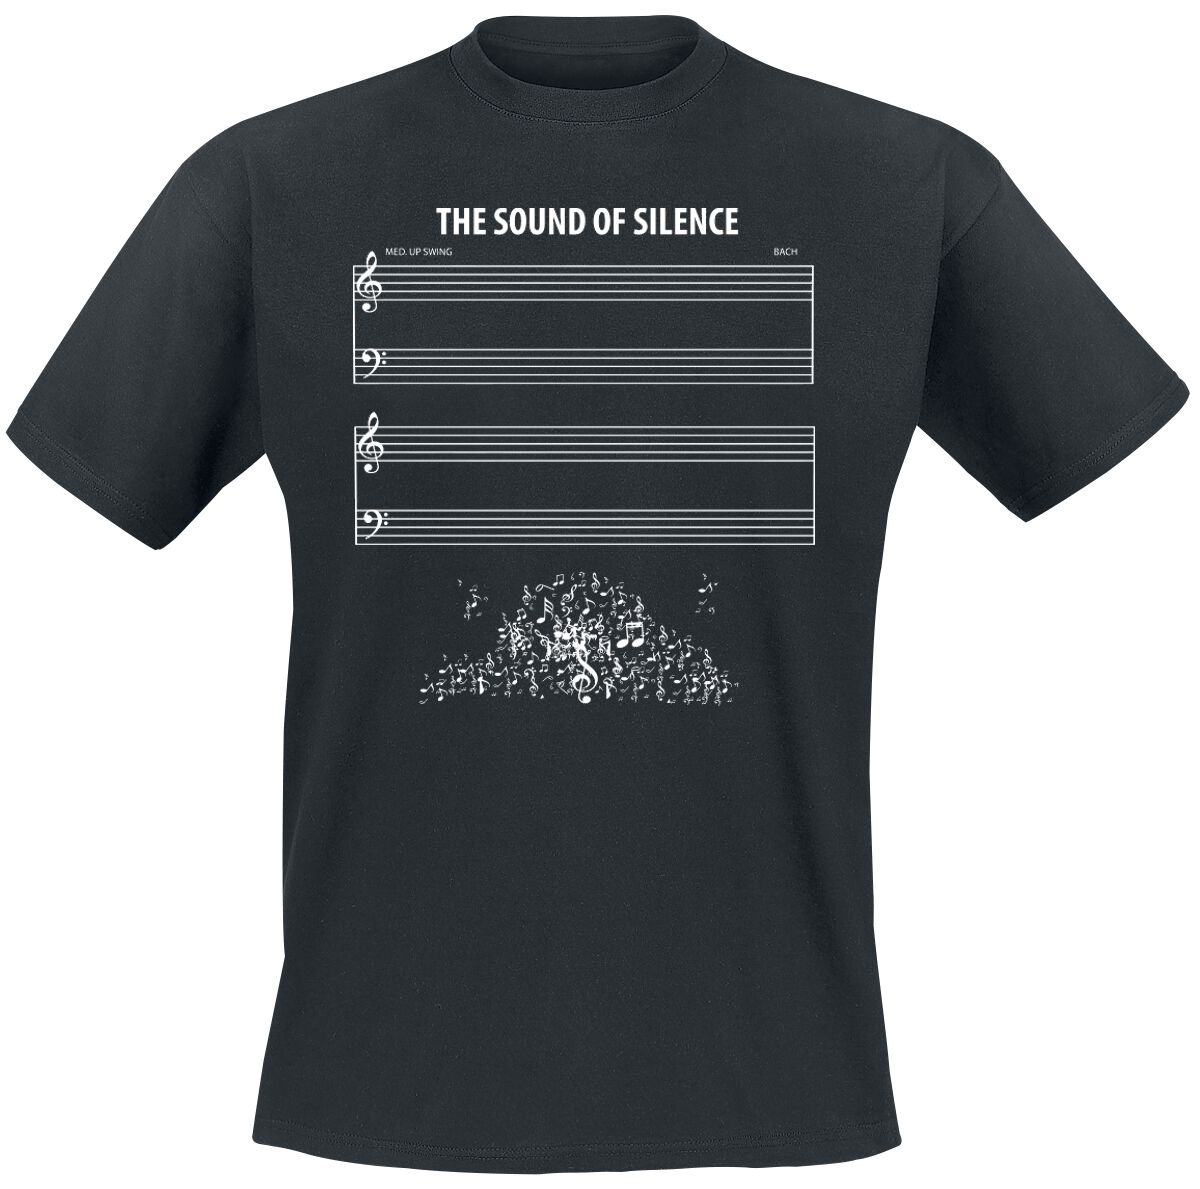 Sprüche T-Shirt - The Sound Of Silence - 3XL bis 4XL - für Männer - Größe 3XL - schwarz